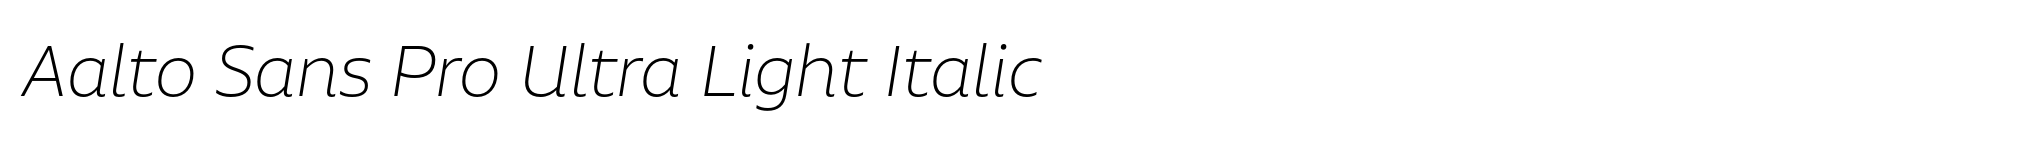 Aalto Sans Pro Ultra Light Italic image